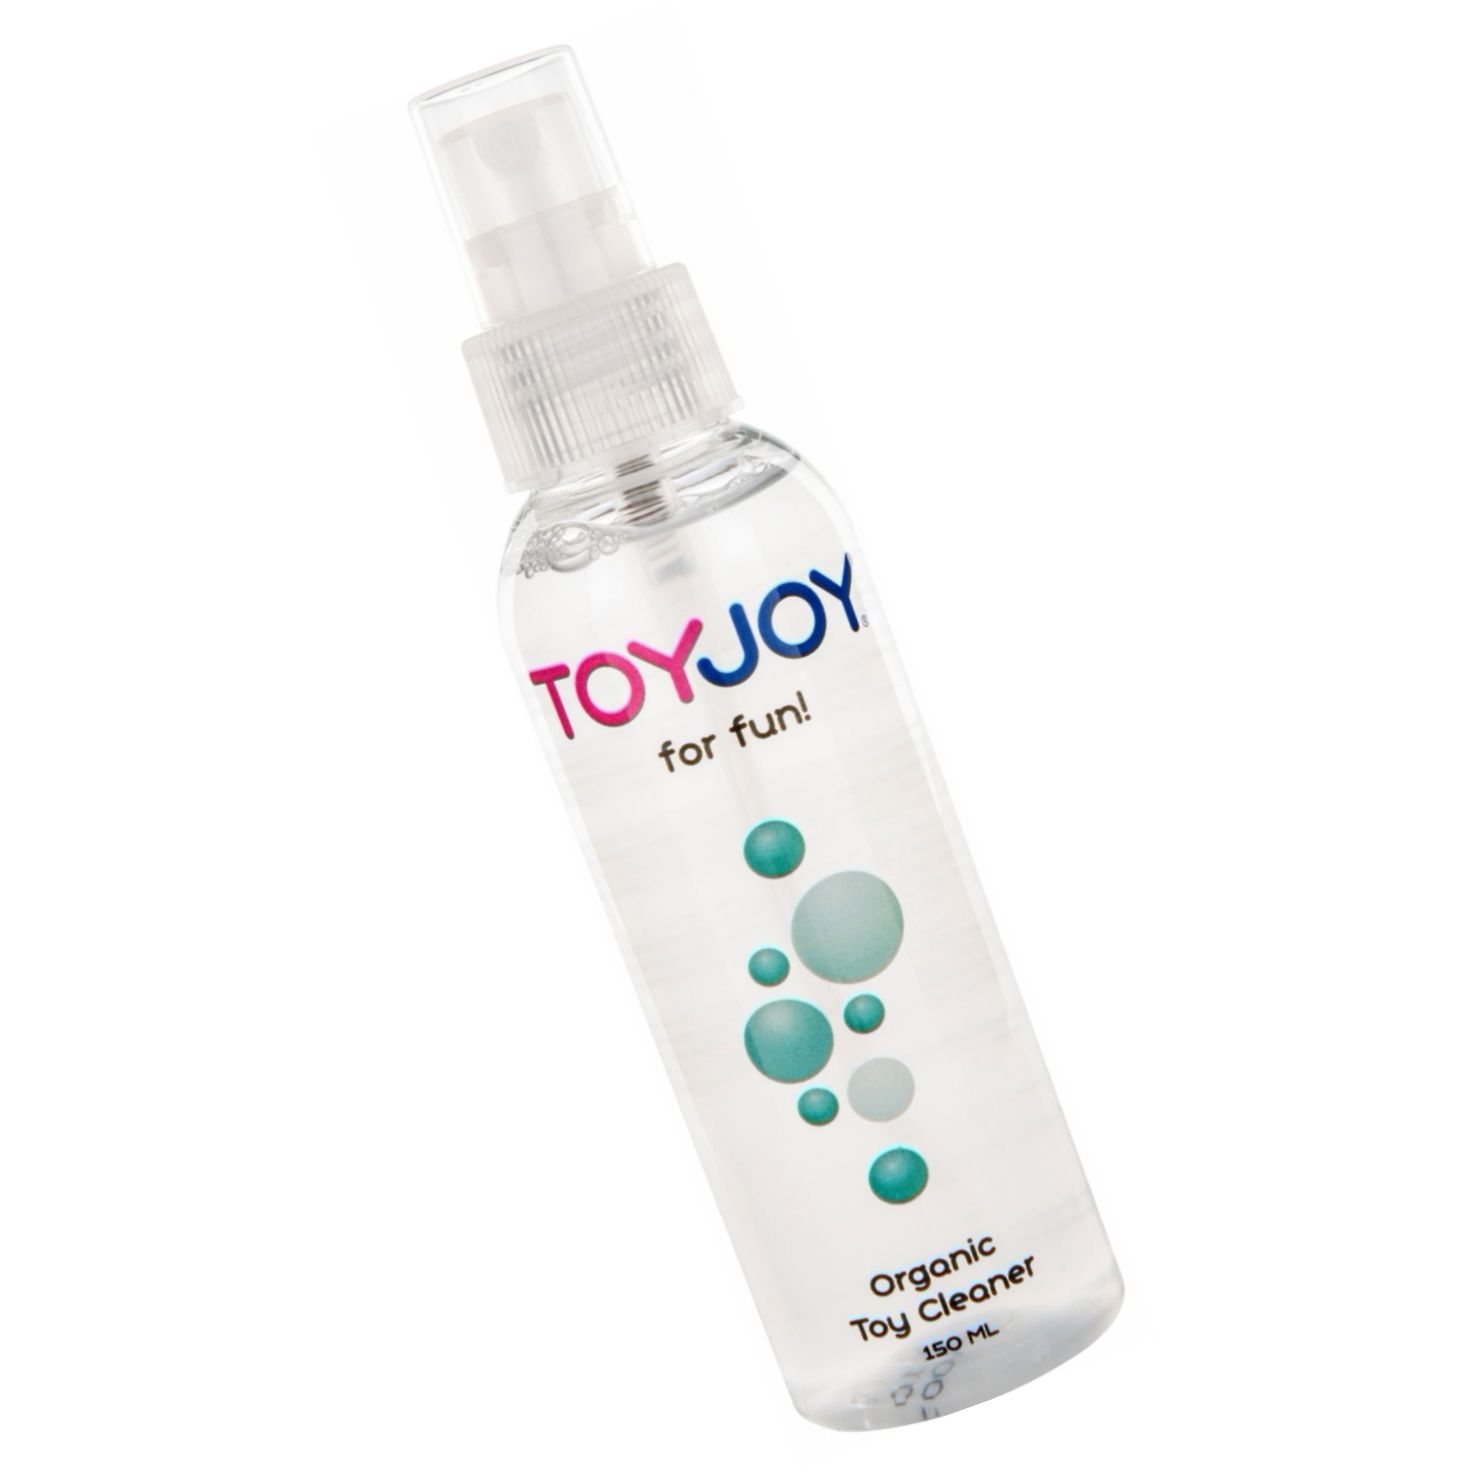 Spray Organic Dezinfectant Toy Joy